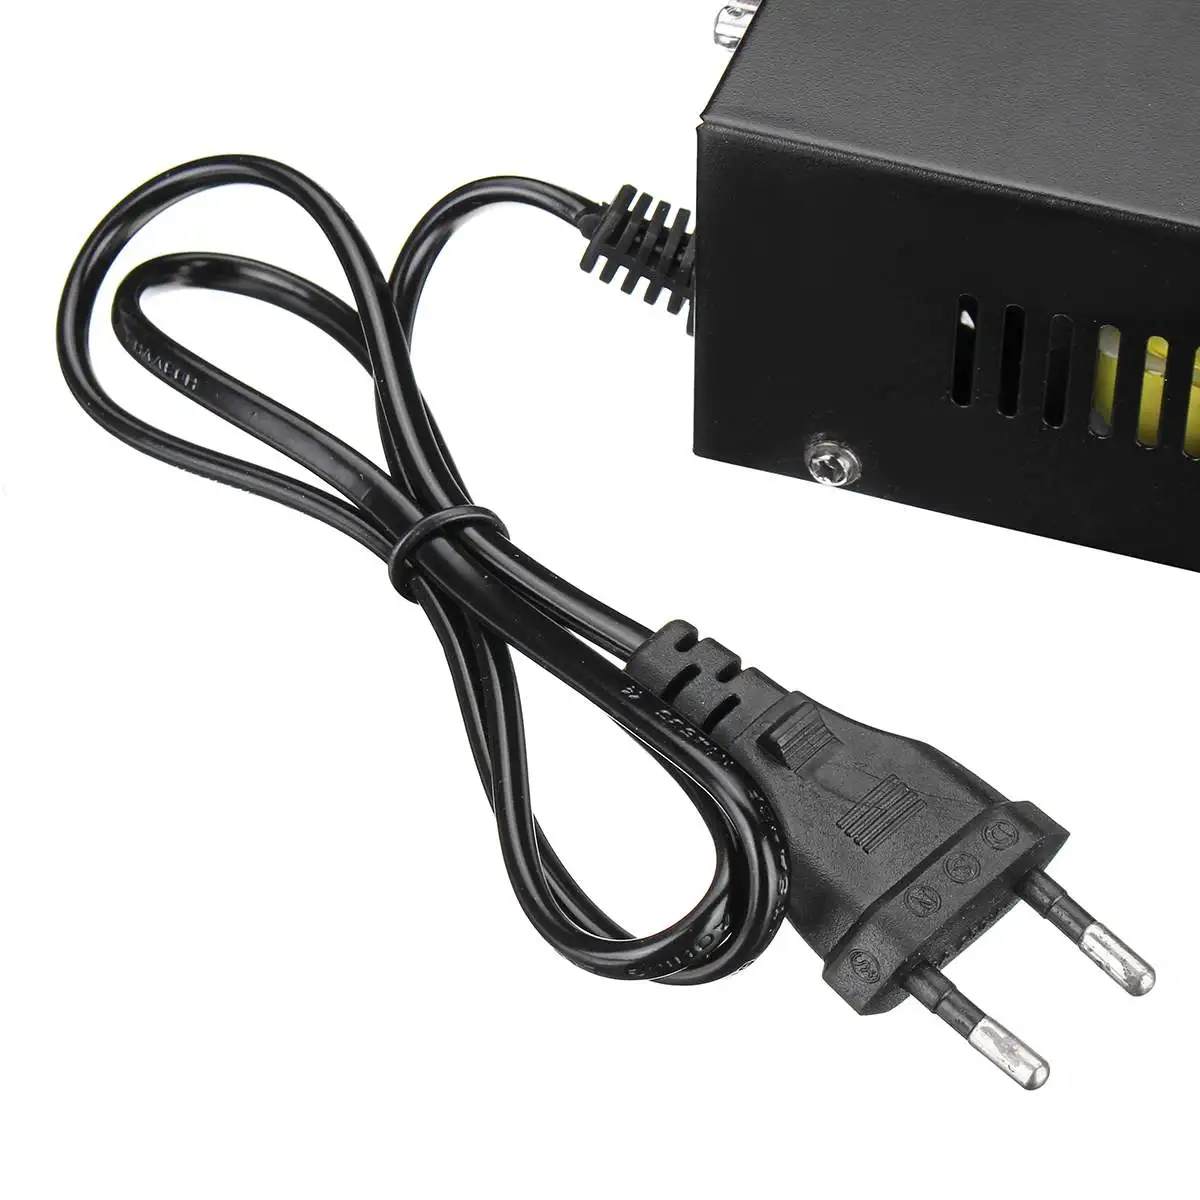 USB SD HIFI Автомобильный bluetooth цифровой усилитель аудио мощность Стерео усилители домашние FM радио сабвуферное оборудование с пультом дистанционного управления